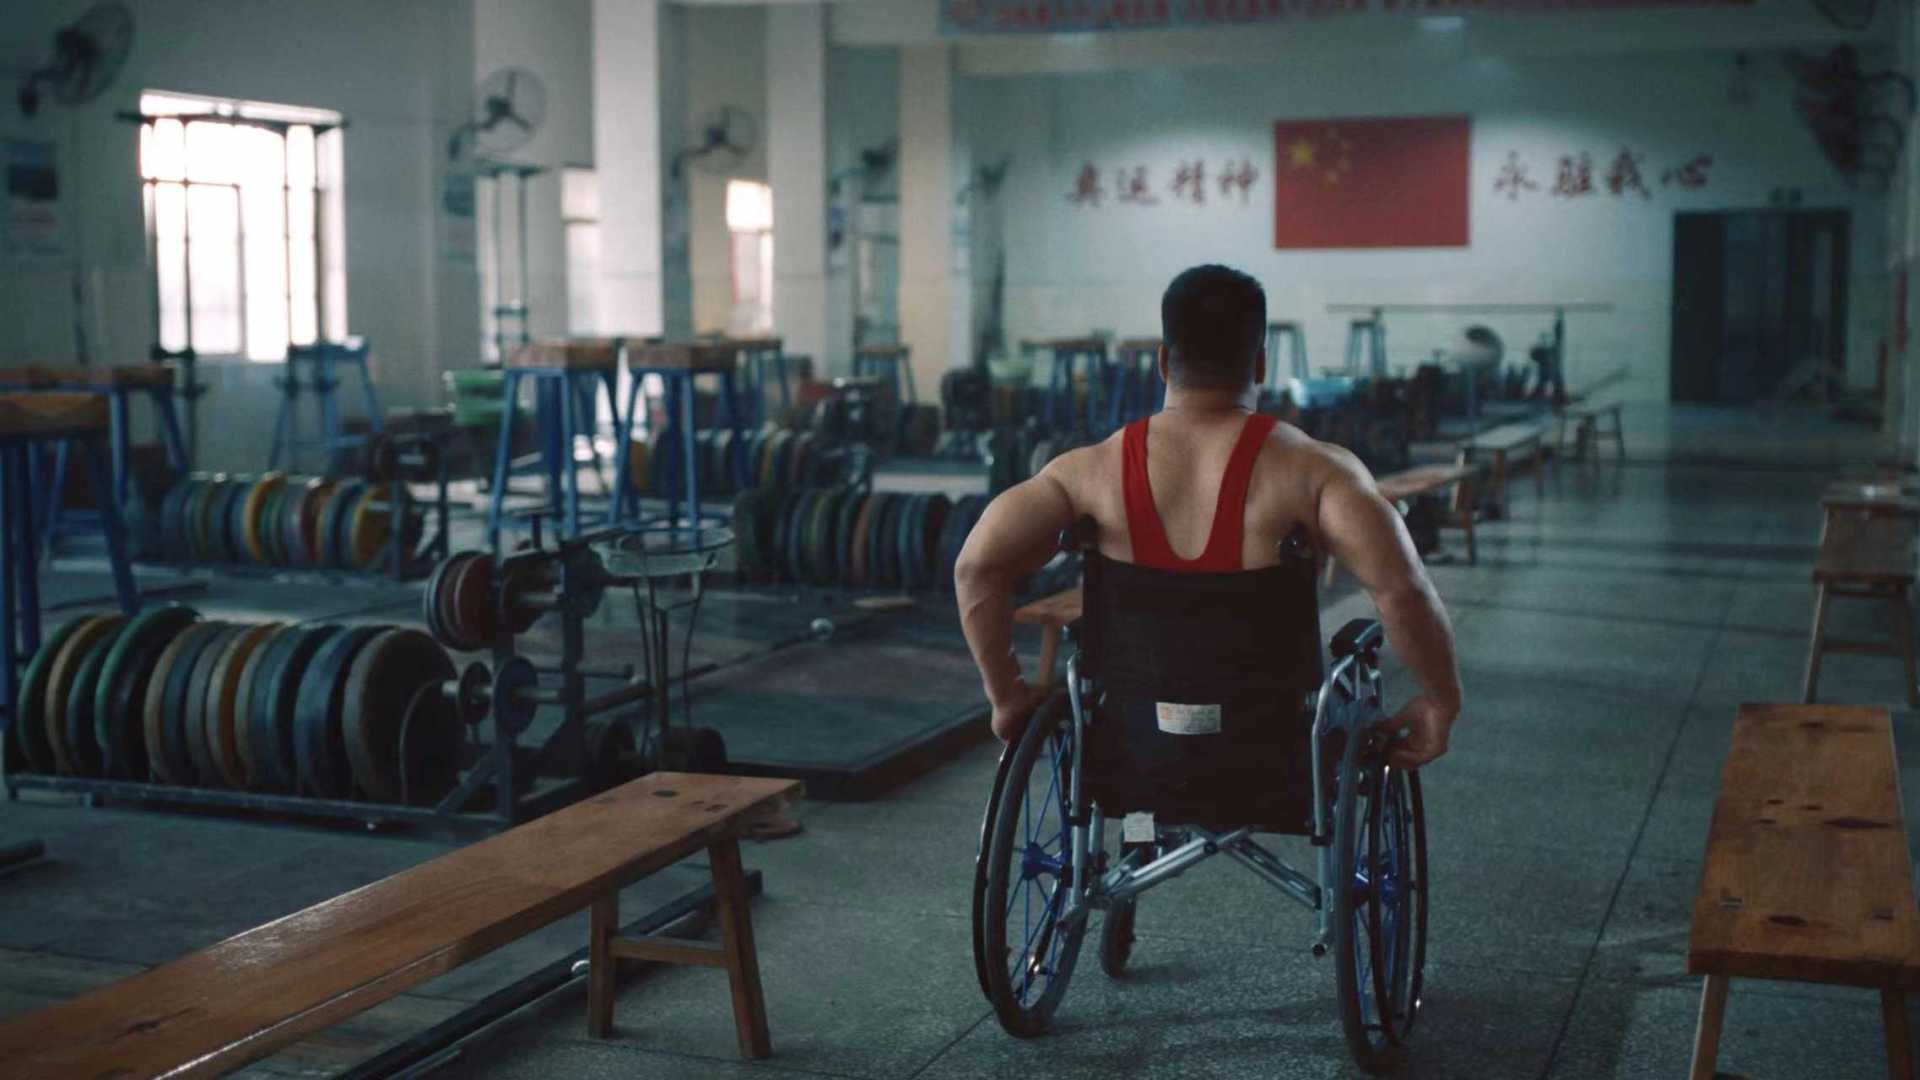 广西壮族自治区第十届残疾人运动会暨第五届特殊奥林匹克运动会主题宣传片《同样精彩》